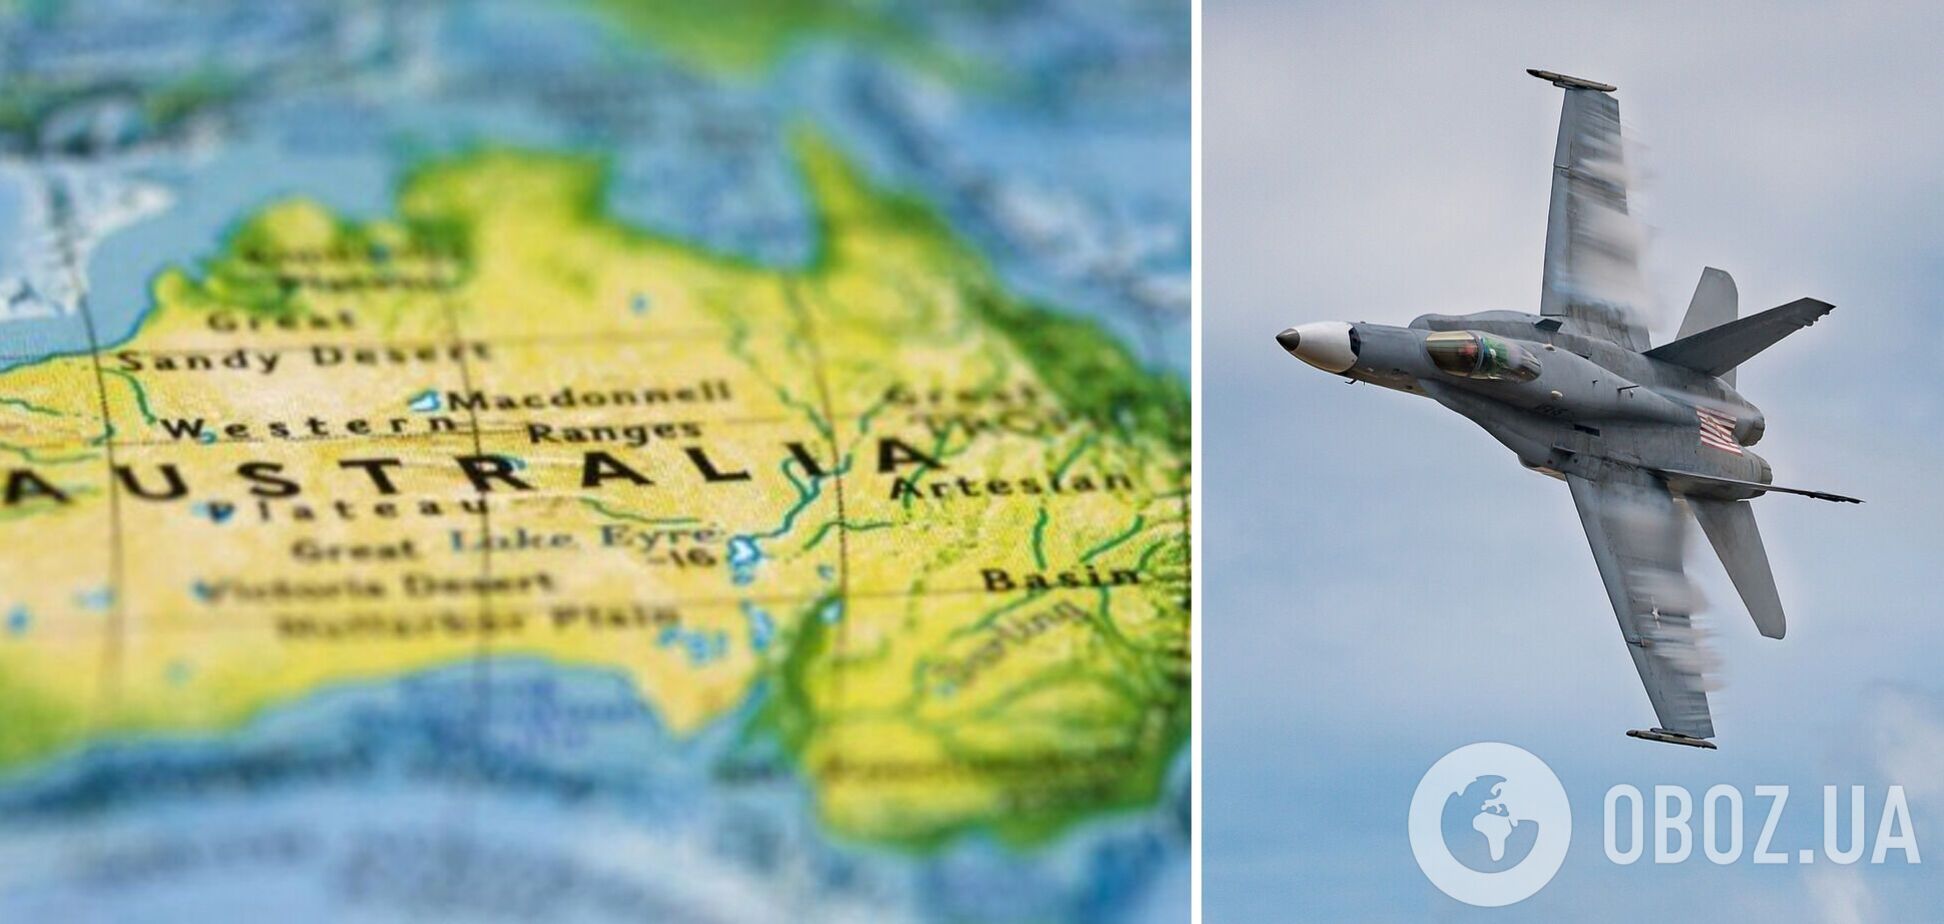 Україна надіслала до Австралії запит щодо передачі винищувачів F-18: йдеться про 41 літак